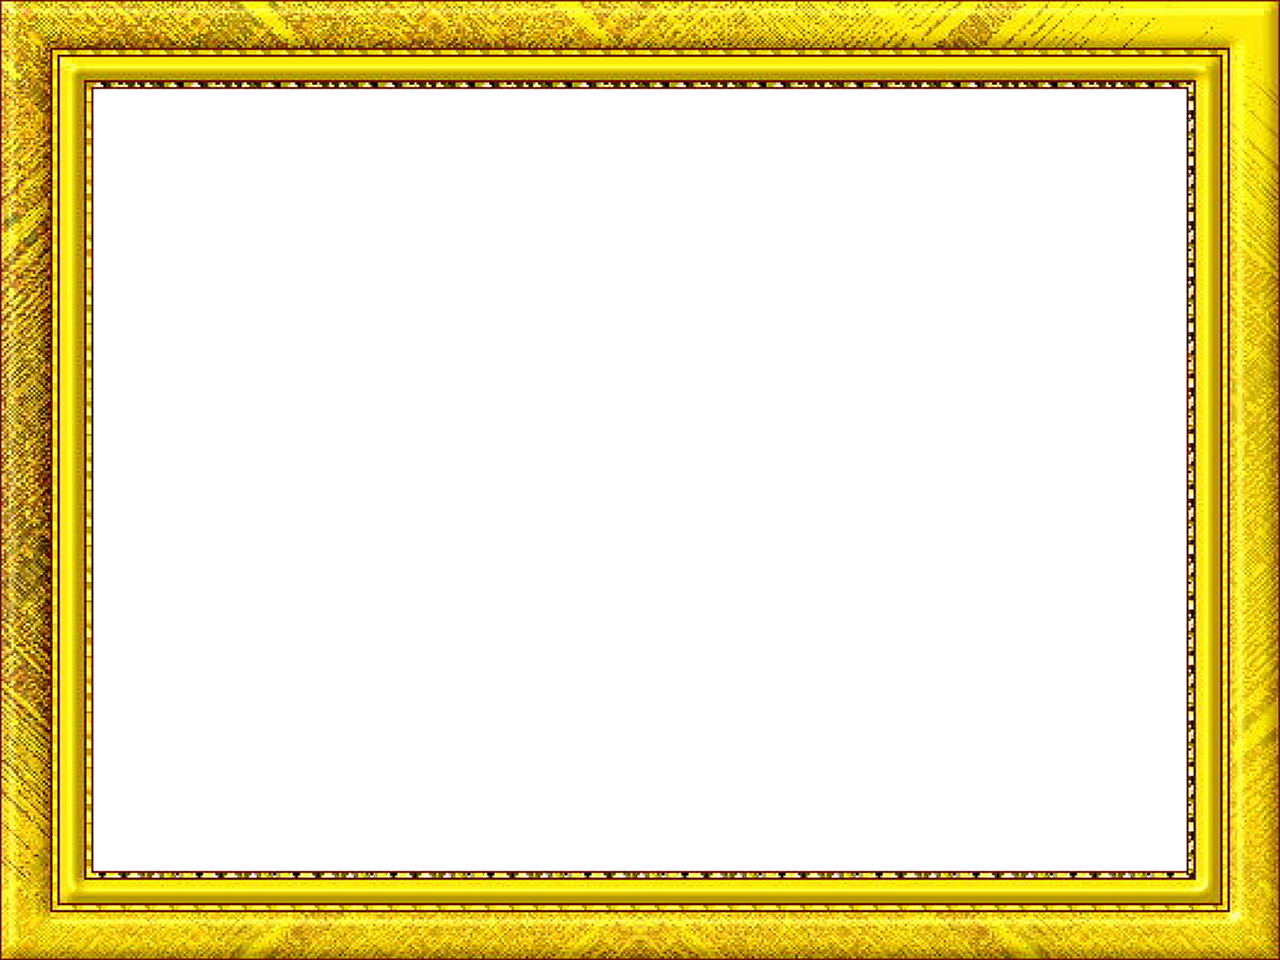 Желтая рамка вокруг экрана. Рамка золото. Золотая рамка. Золотистая рамка. Желтая рамка.